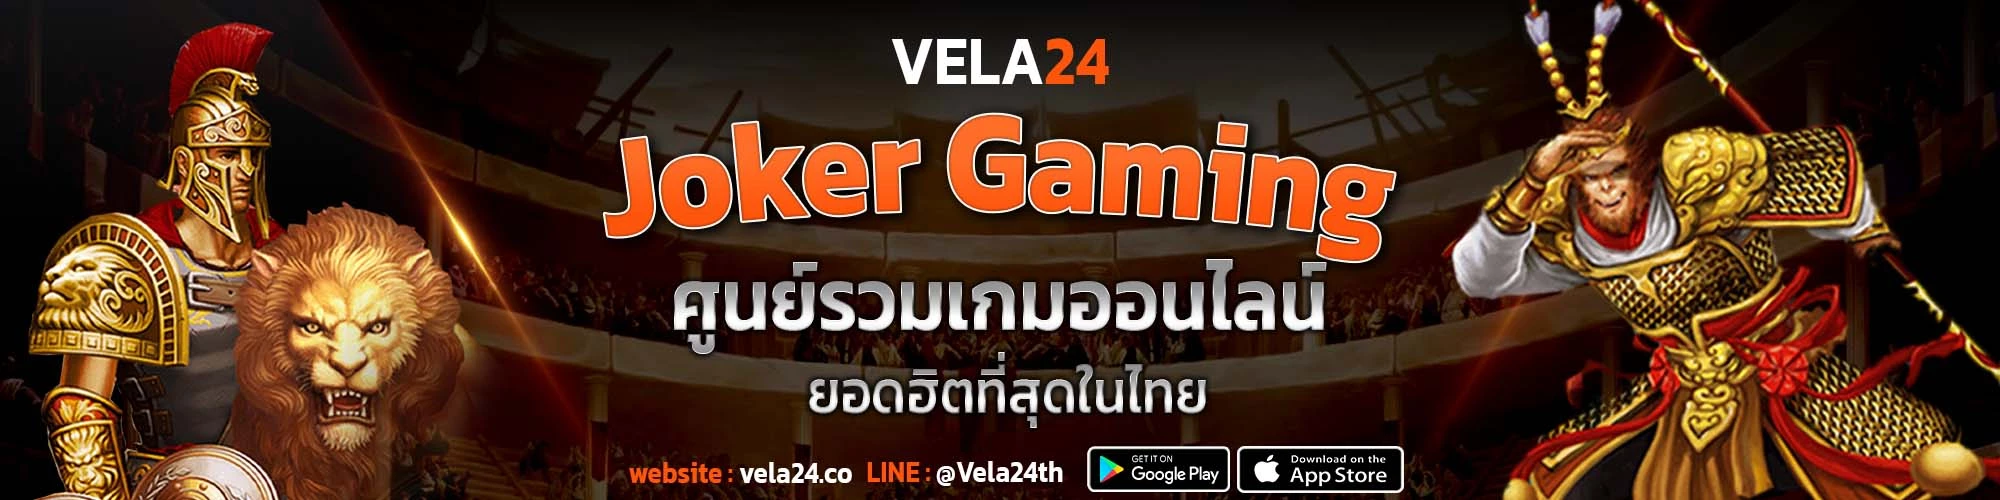 JokerGaming ศูนย์รวมเกมออนไลน์ ยอดฮิตที่สุดในไทย